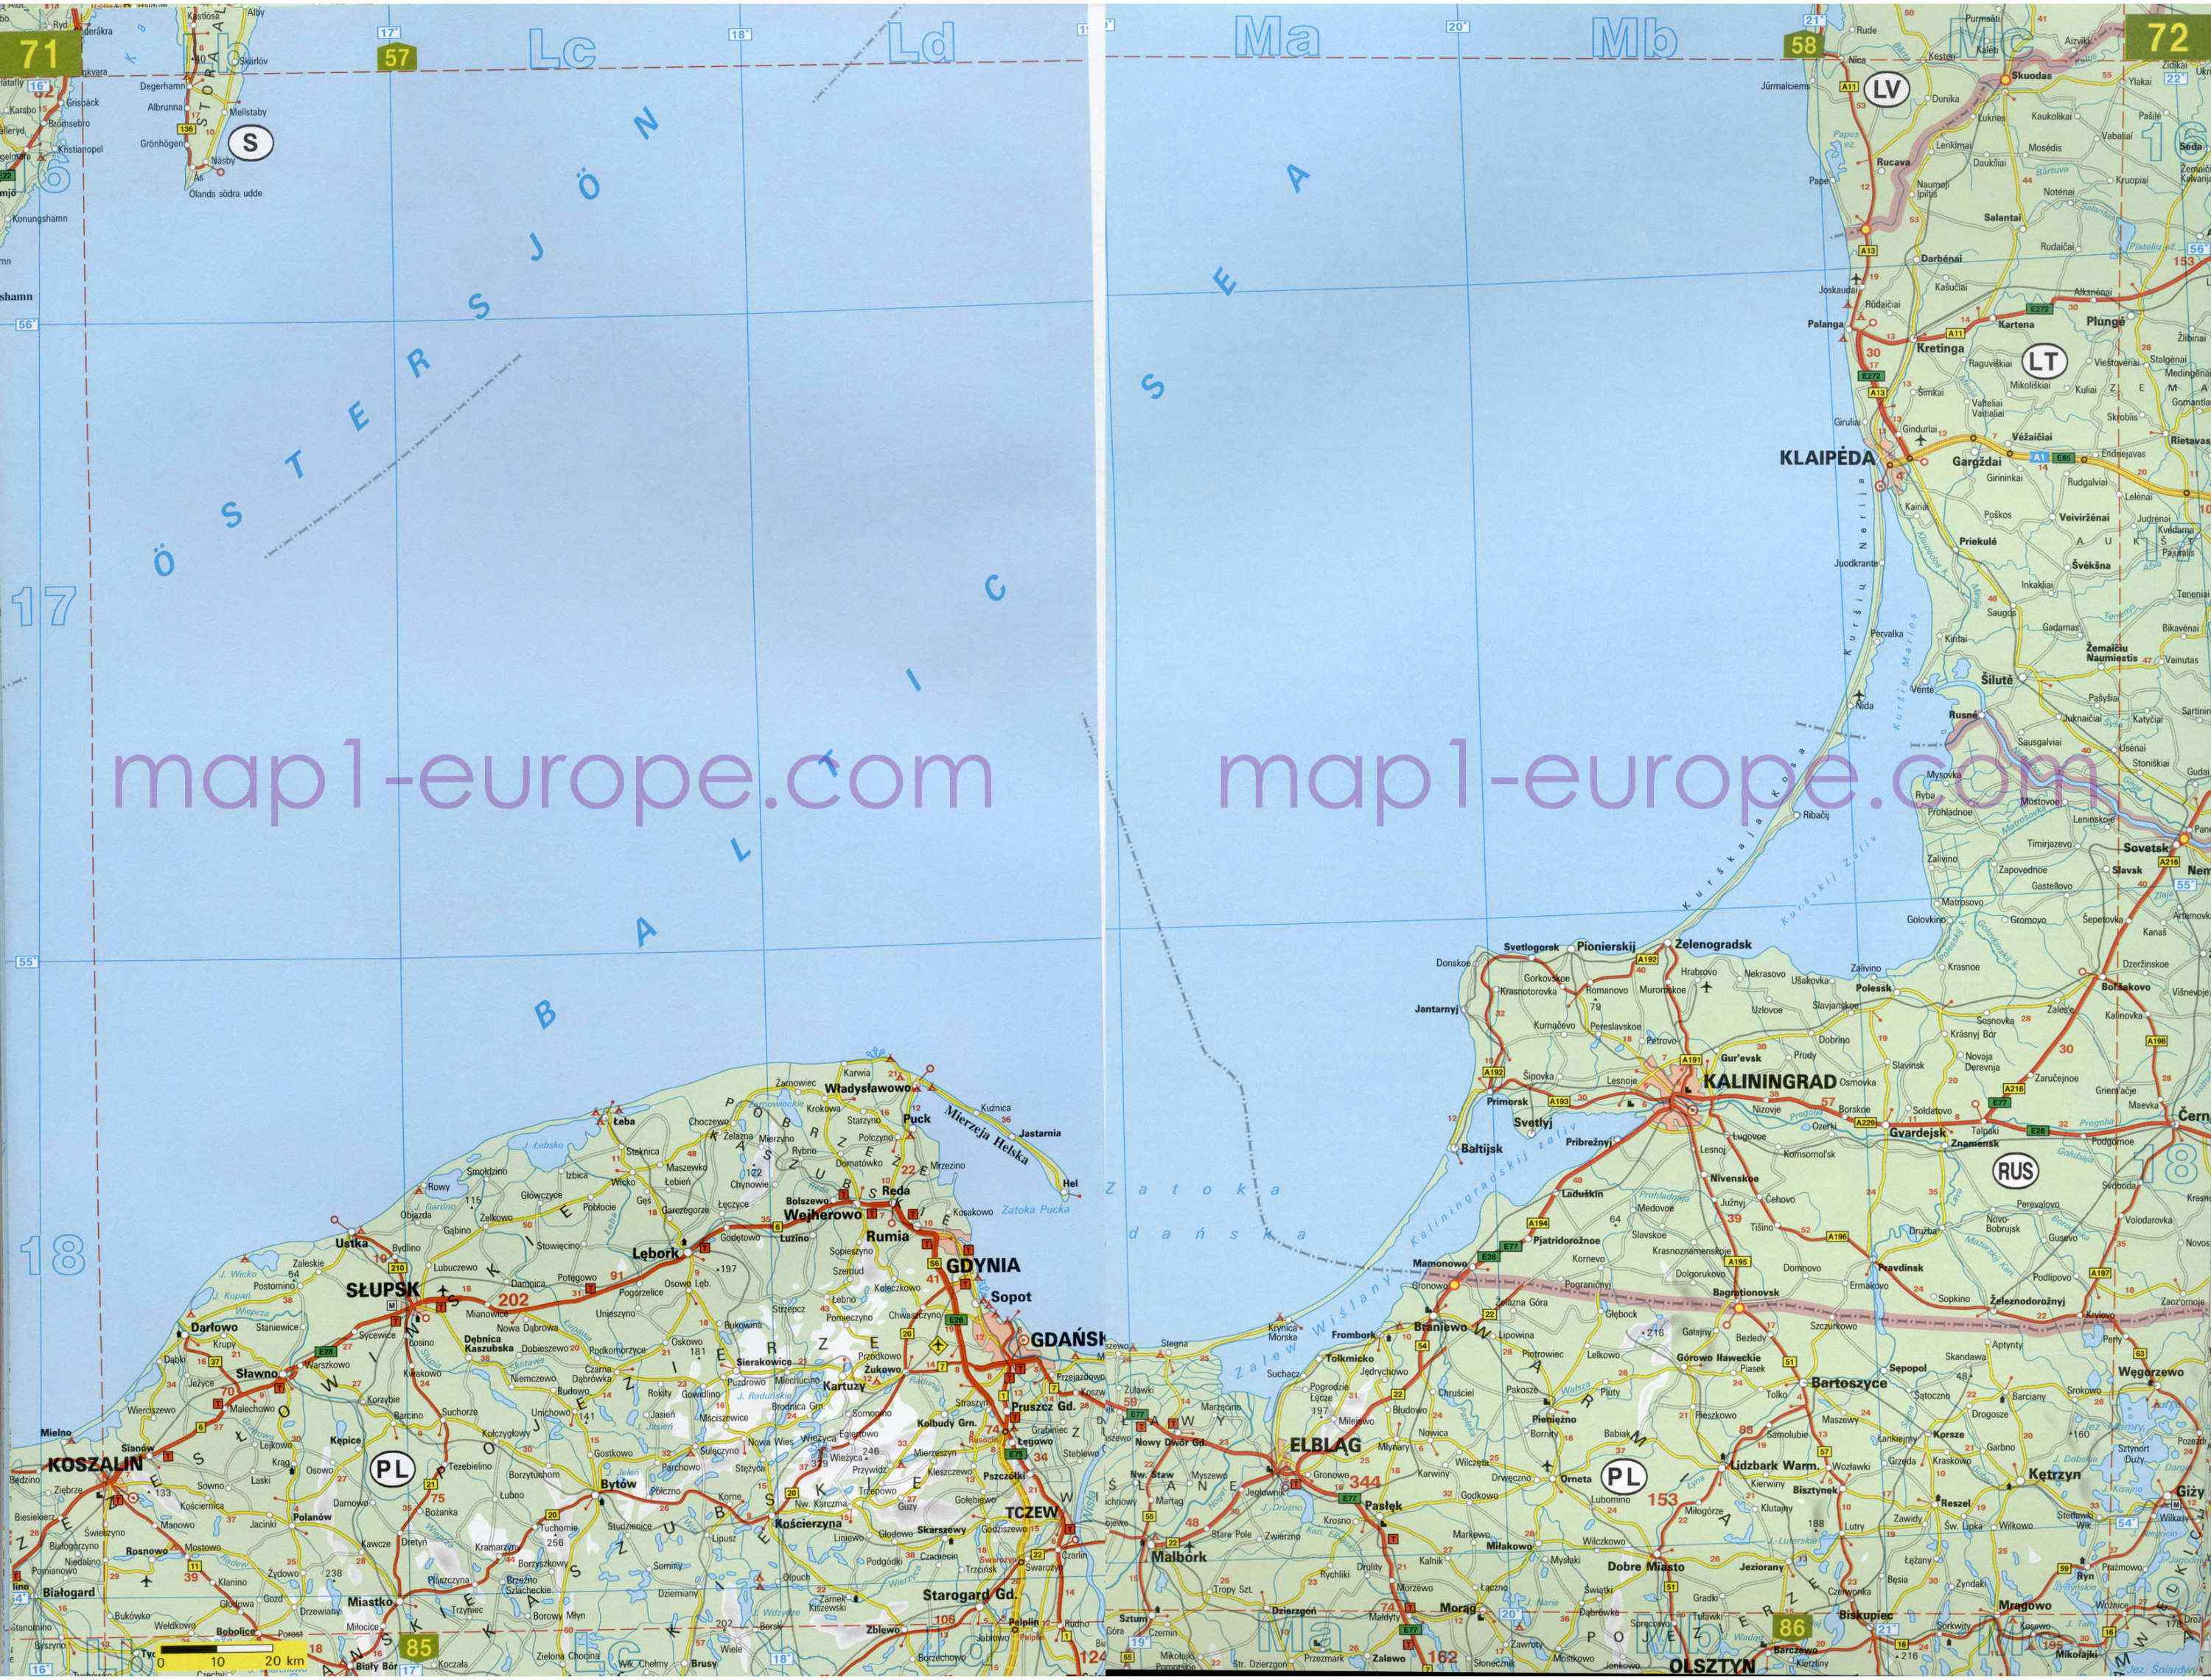 Автомобильная карта Европы. Атлас автомобильных дорог Европы на общей карте, G2 - 